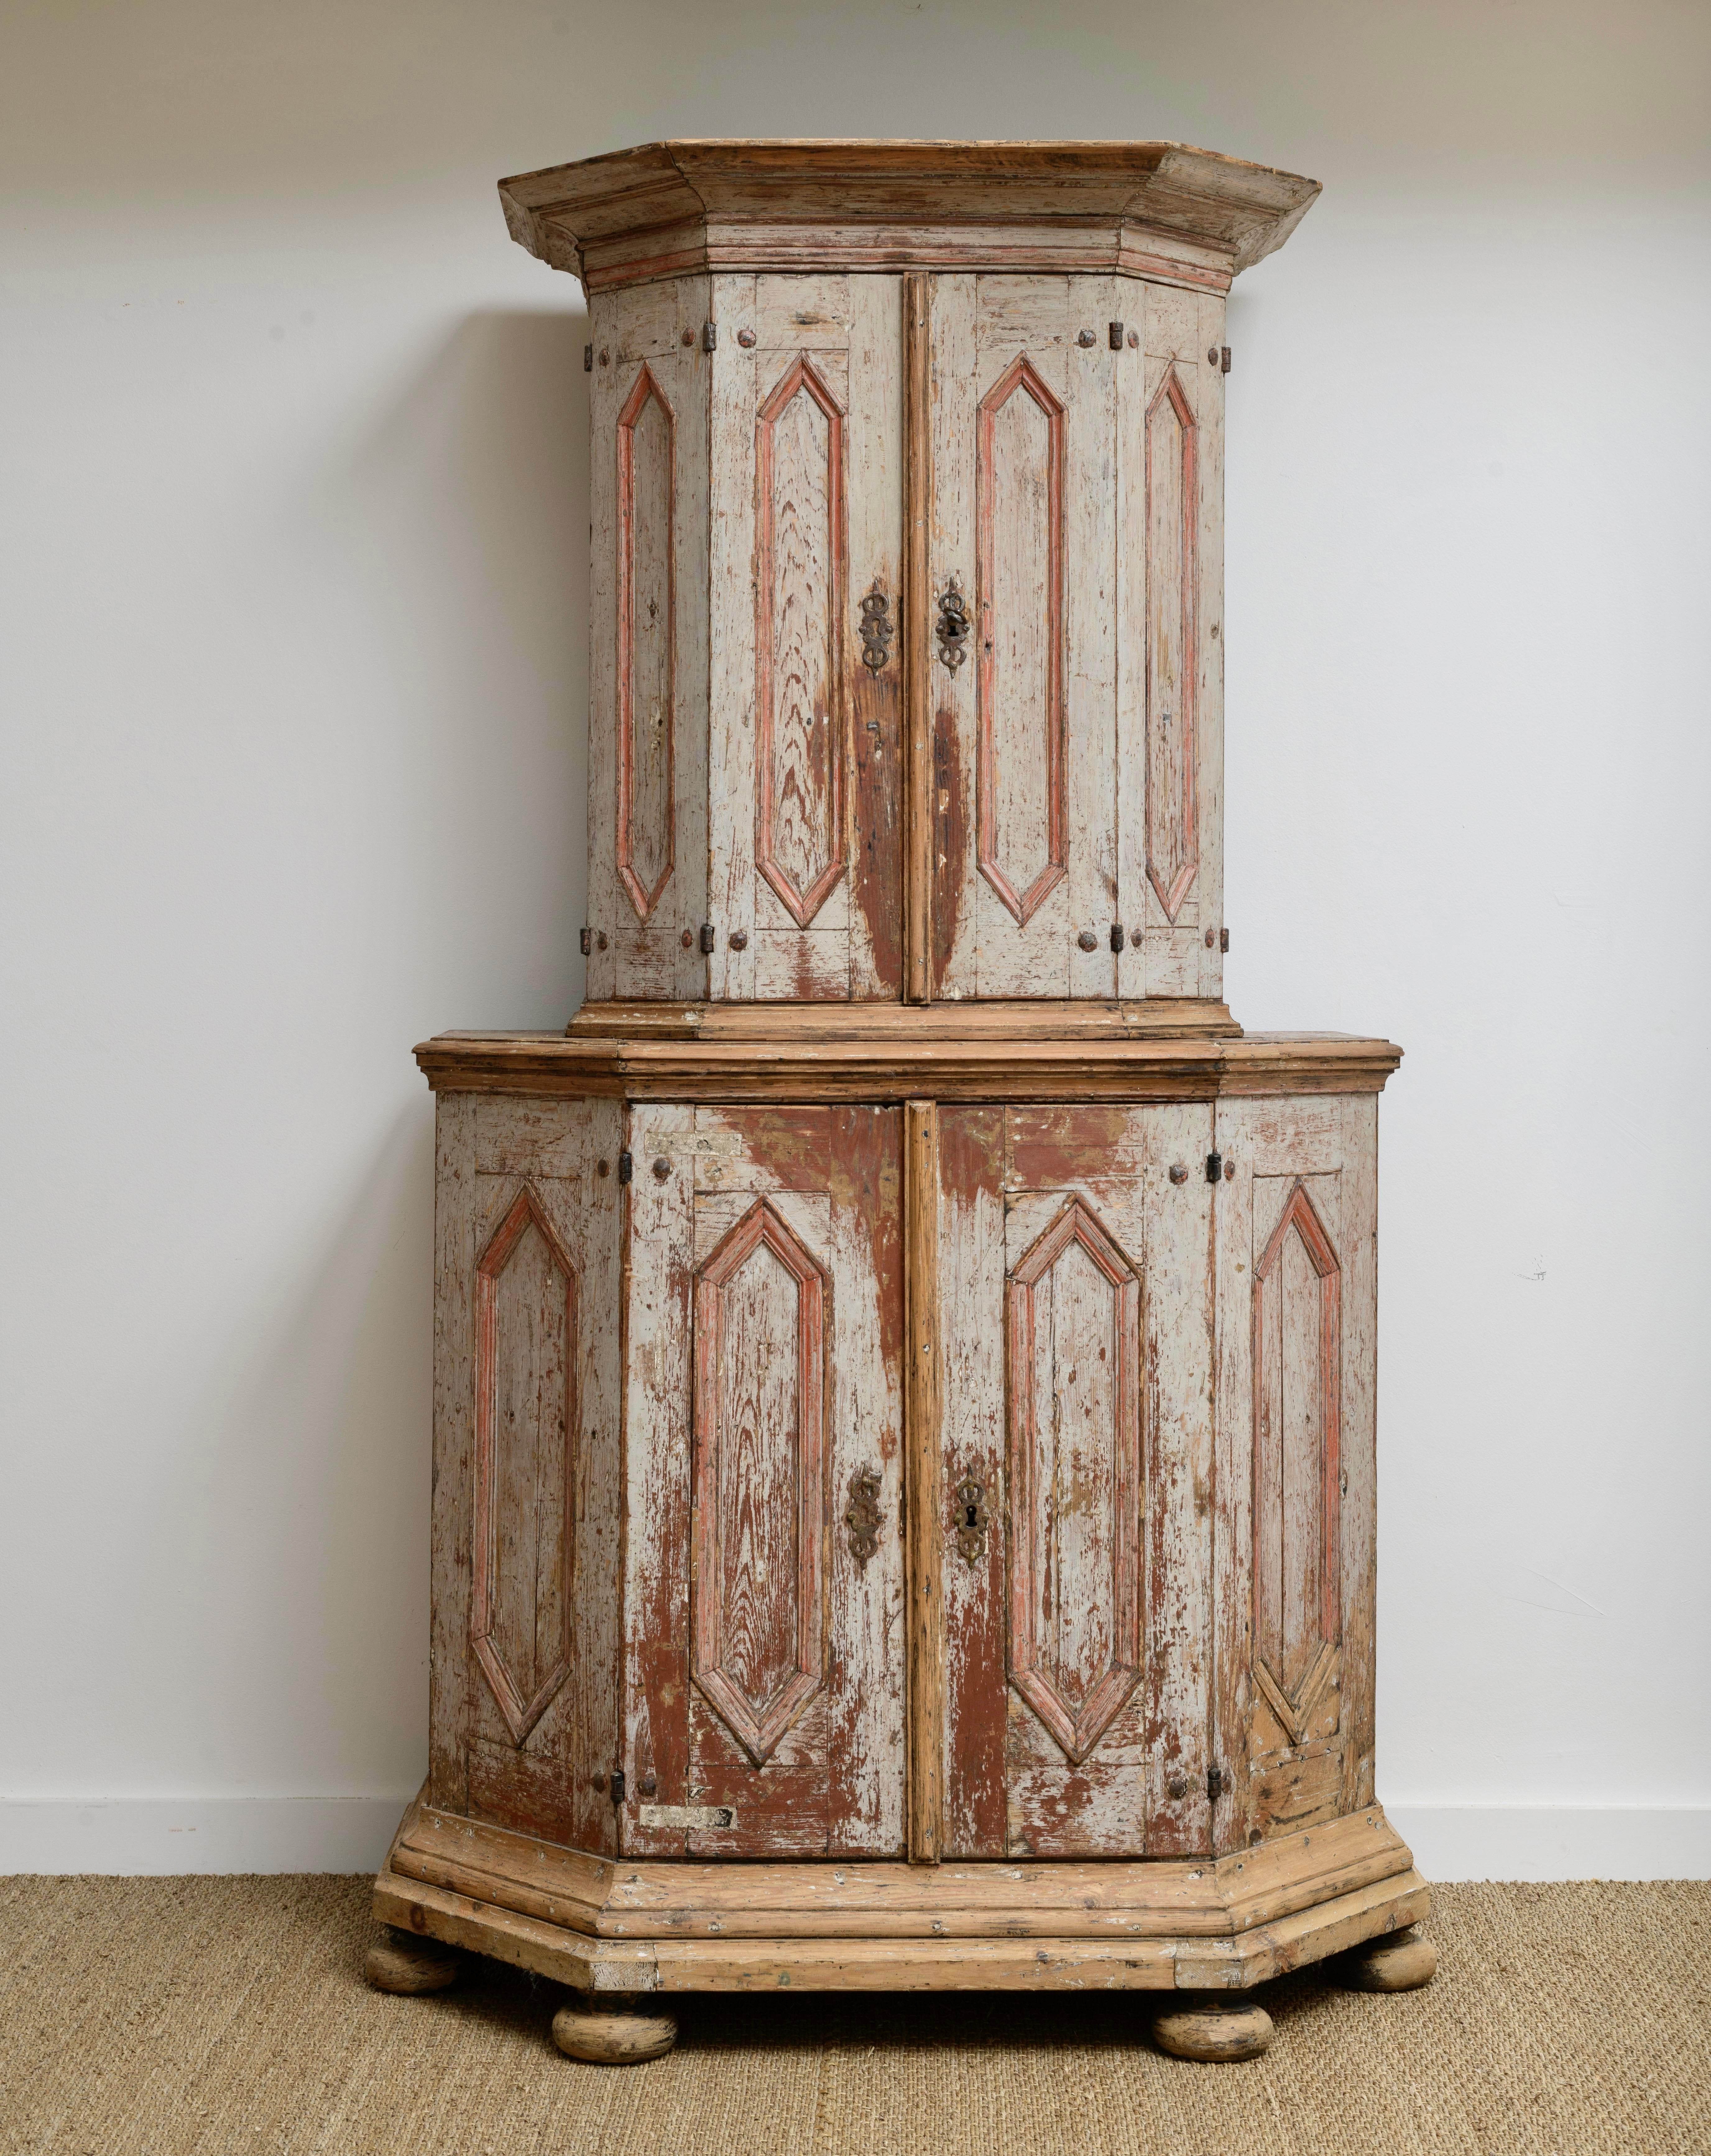 Ca.1750 Cabinet baroque suédois sur meuble avec peinture d'origine dans les tons de gris et rouge clair.  
cette pièce n'a pas été grattée à sec mais présente des pertes de peinture dues à son utilisation depuis qu'elle a été fabriquée. 